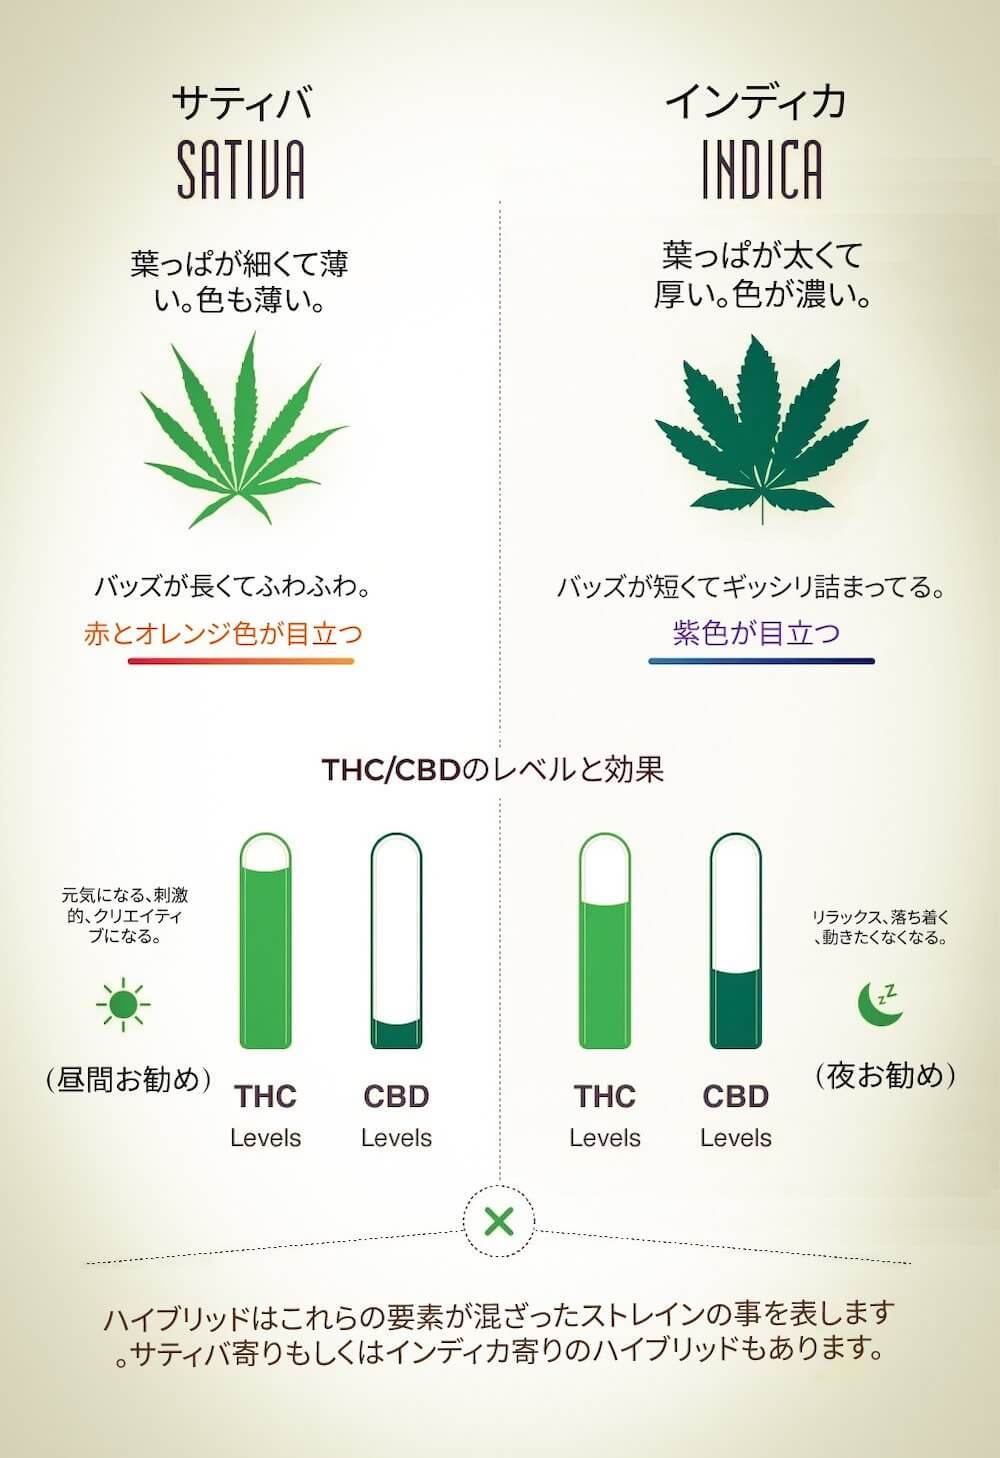 大麻におけるインディカとサティバの違い